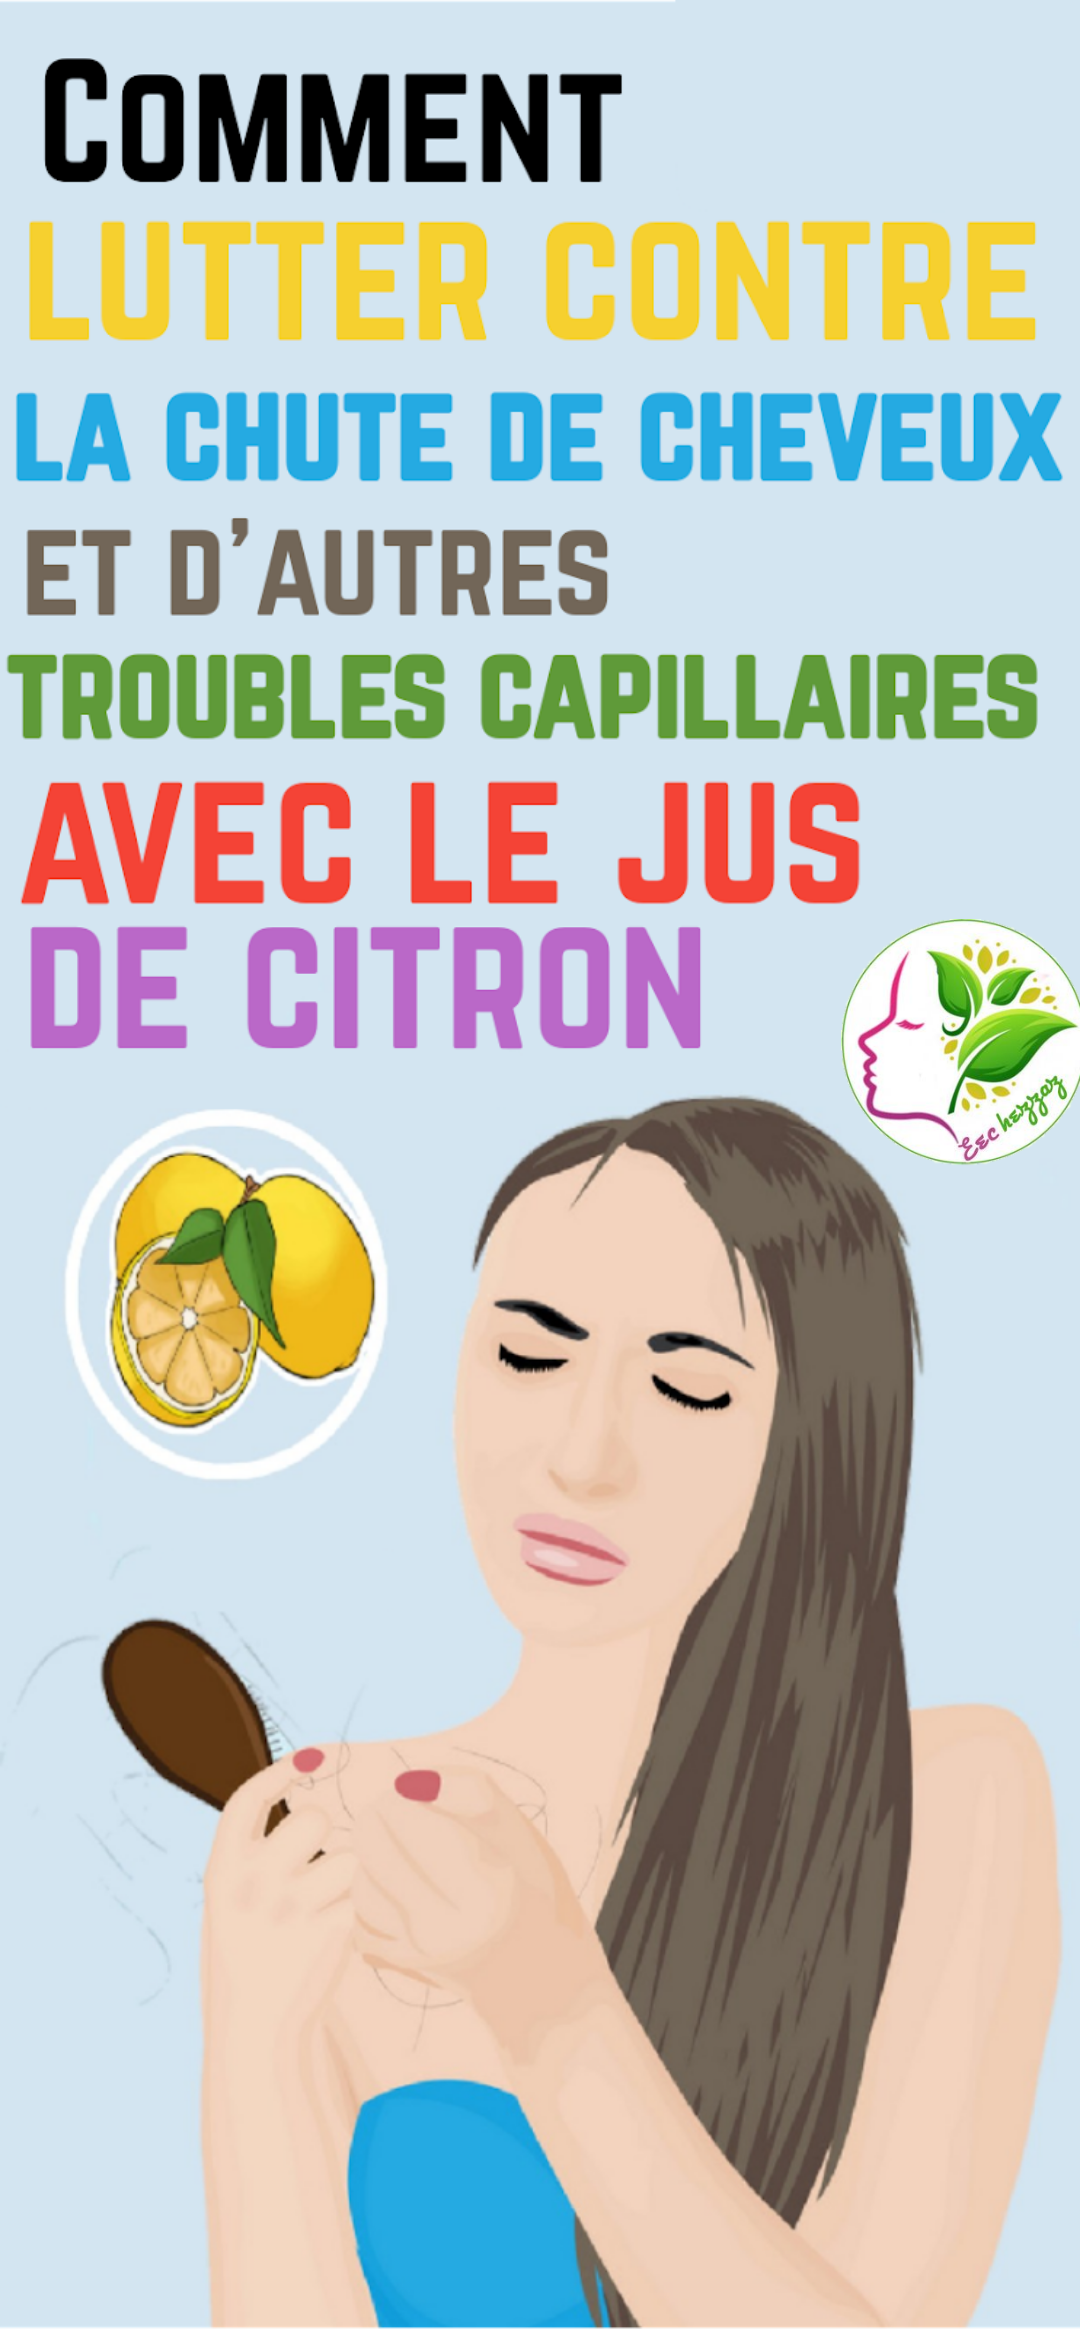 Stopper la chute de cheveux et d'autres troubles capillaires avec le jus de citron